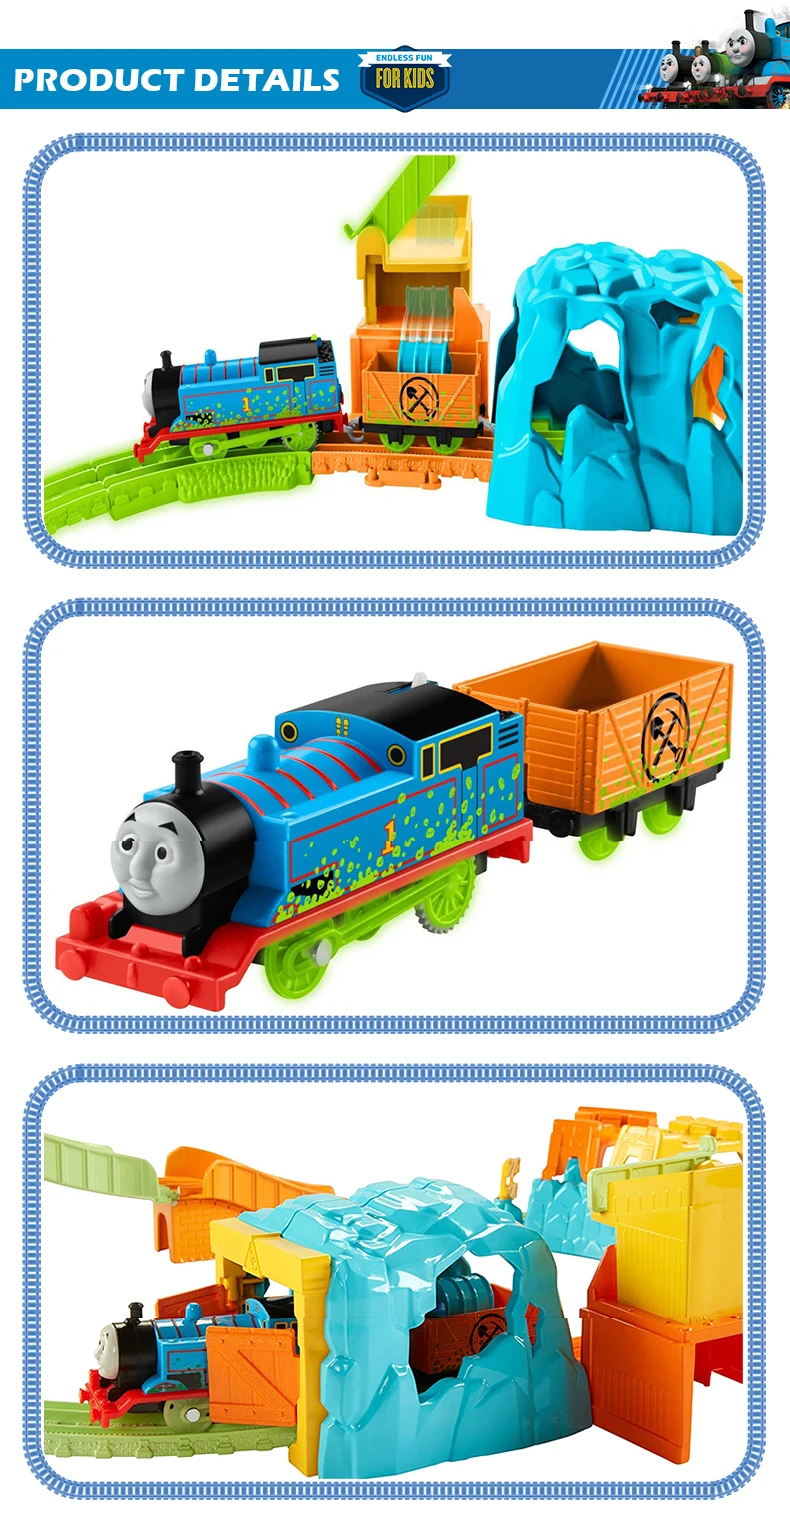 Томас и Друзья Track Master новейший поезд игрушки Светящиеся шахты набор железнодорожное обучение строительный трек электрические игрушки FBKJ52 подарок